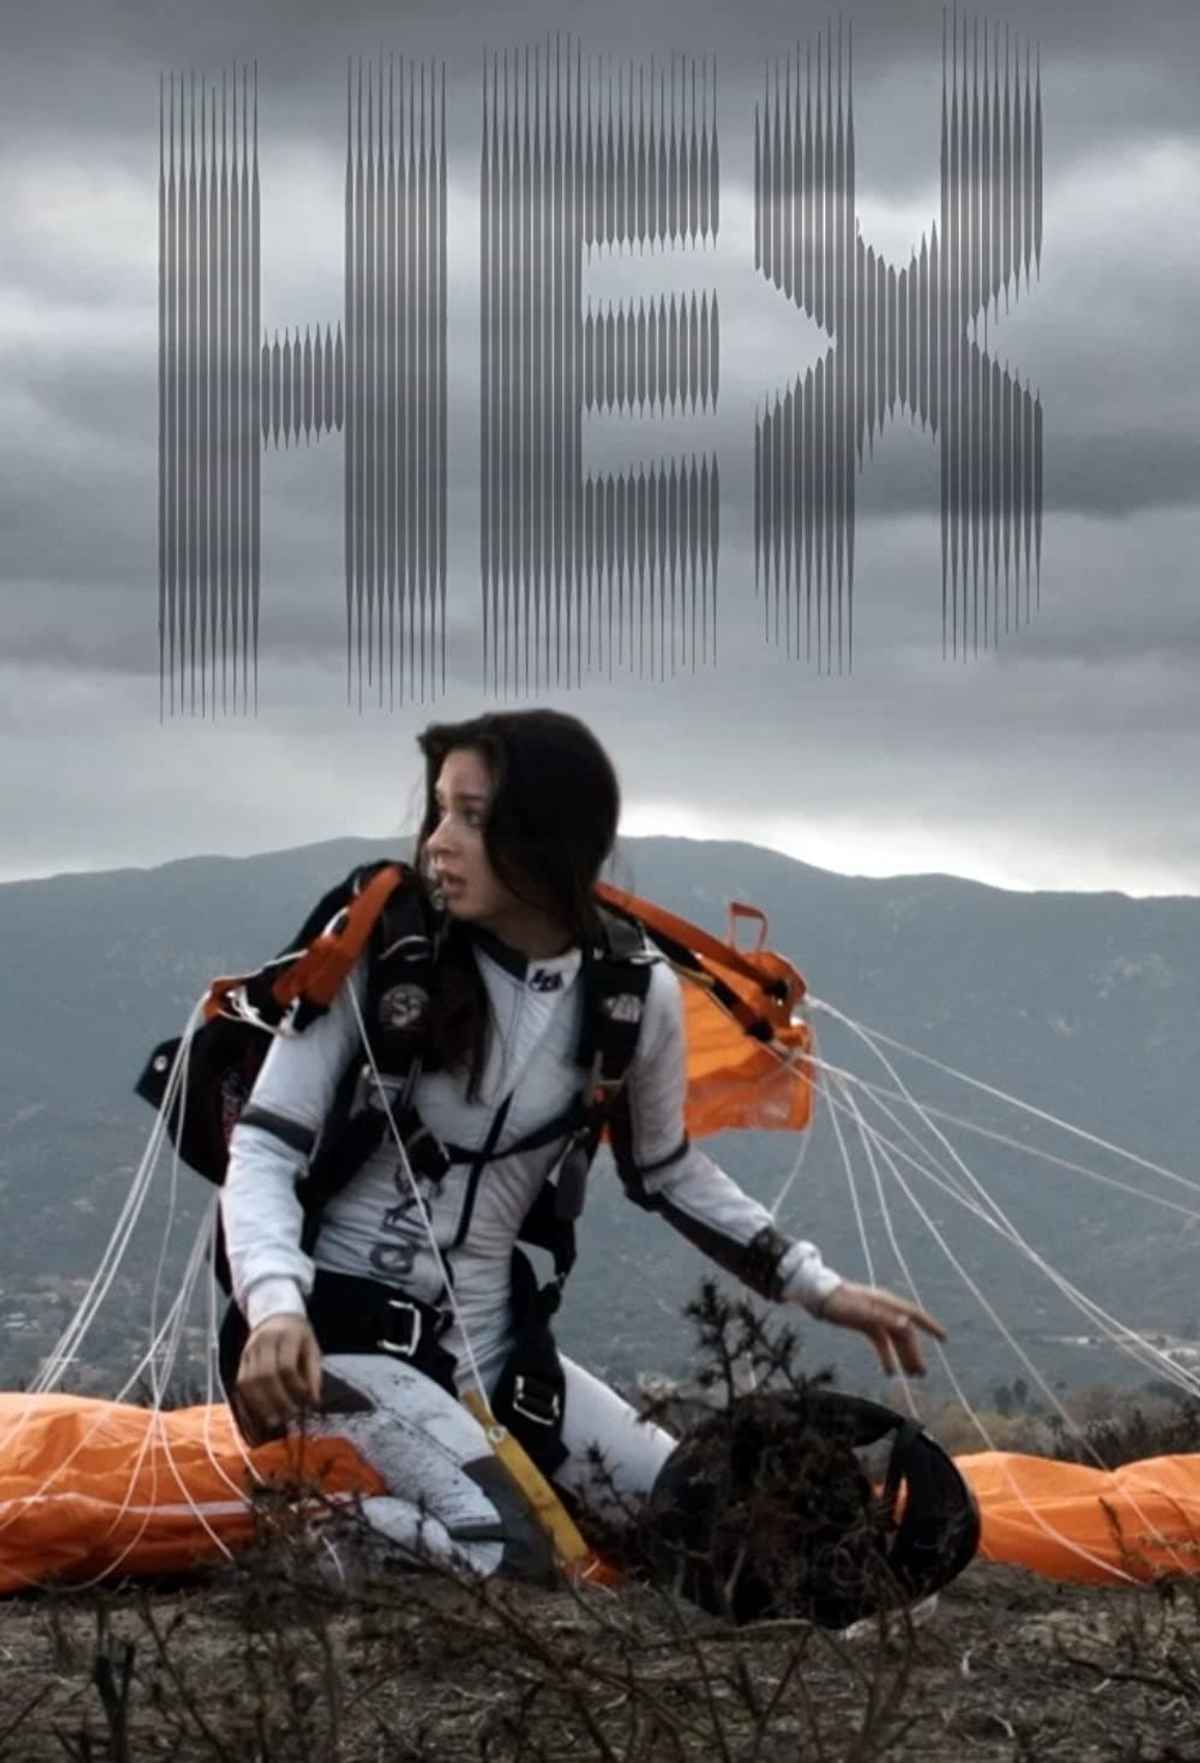 Hex